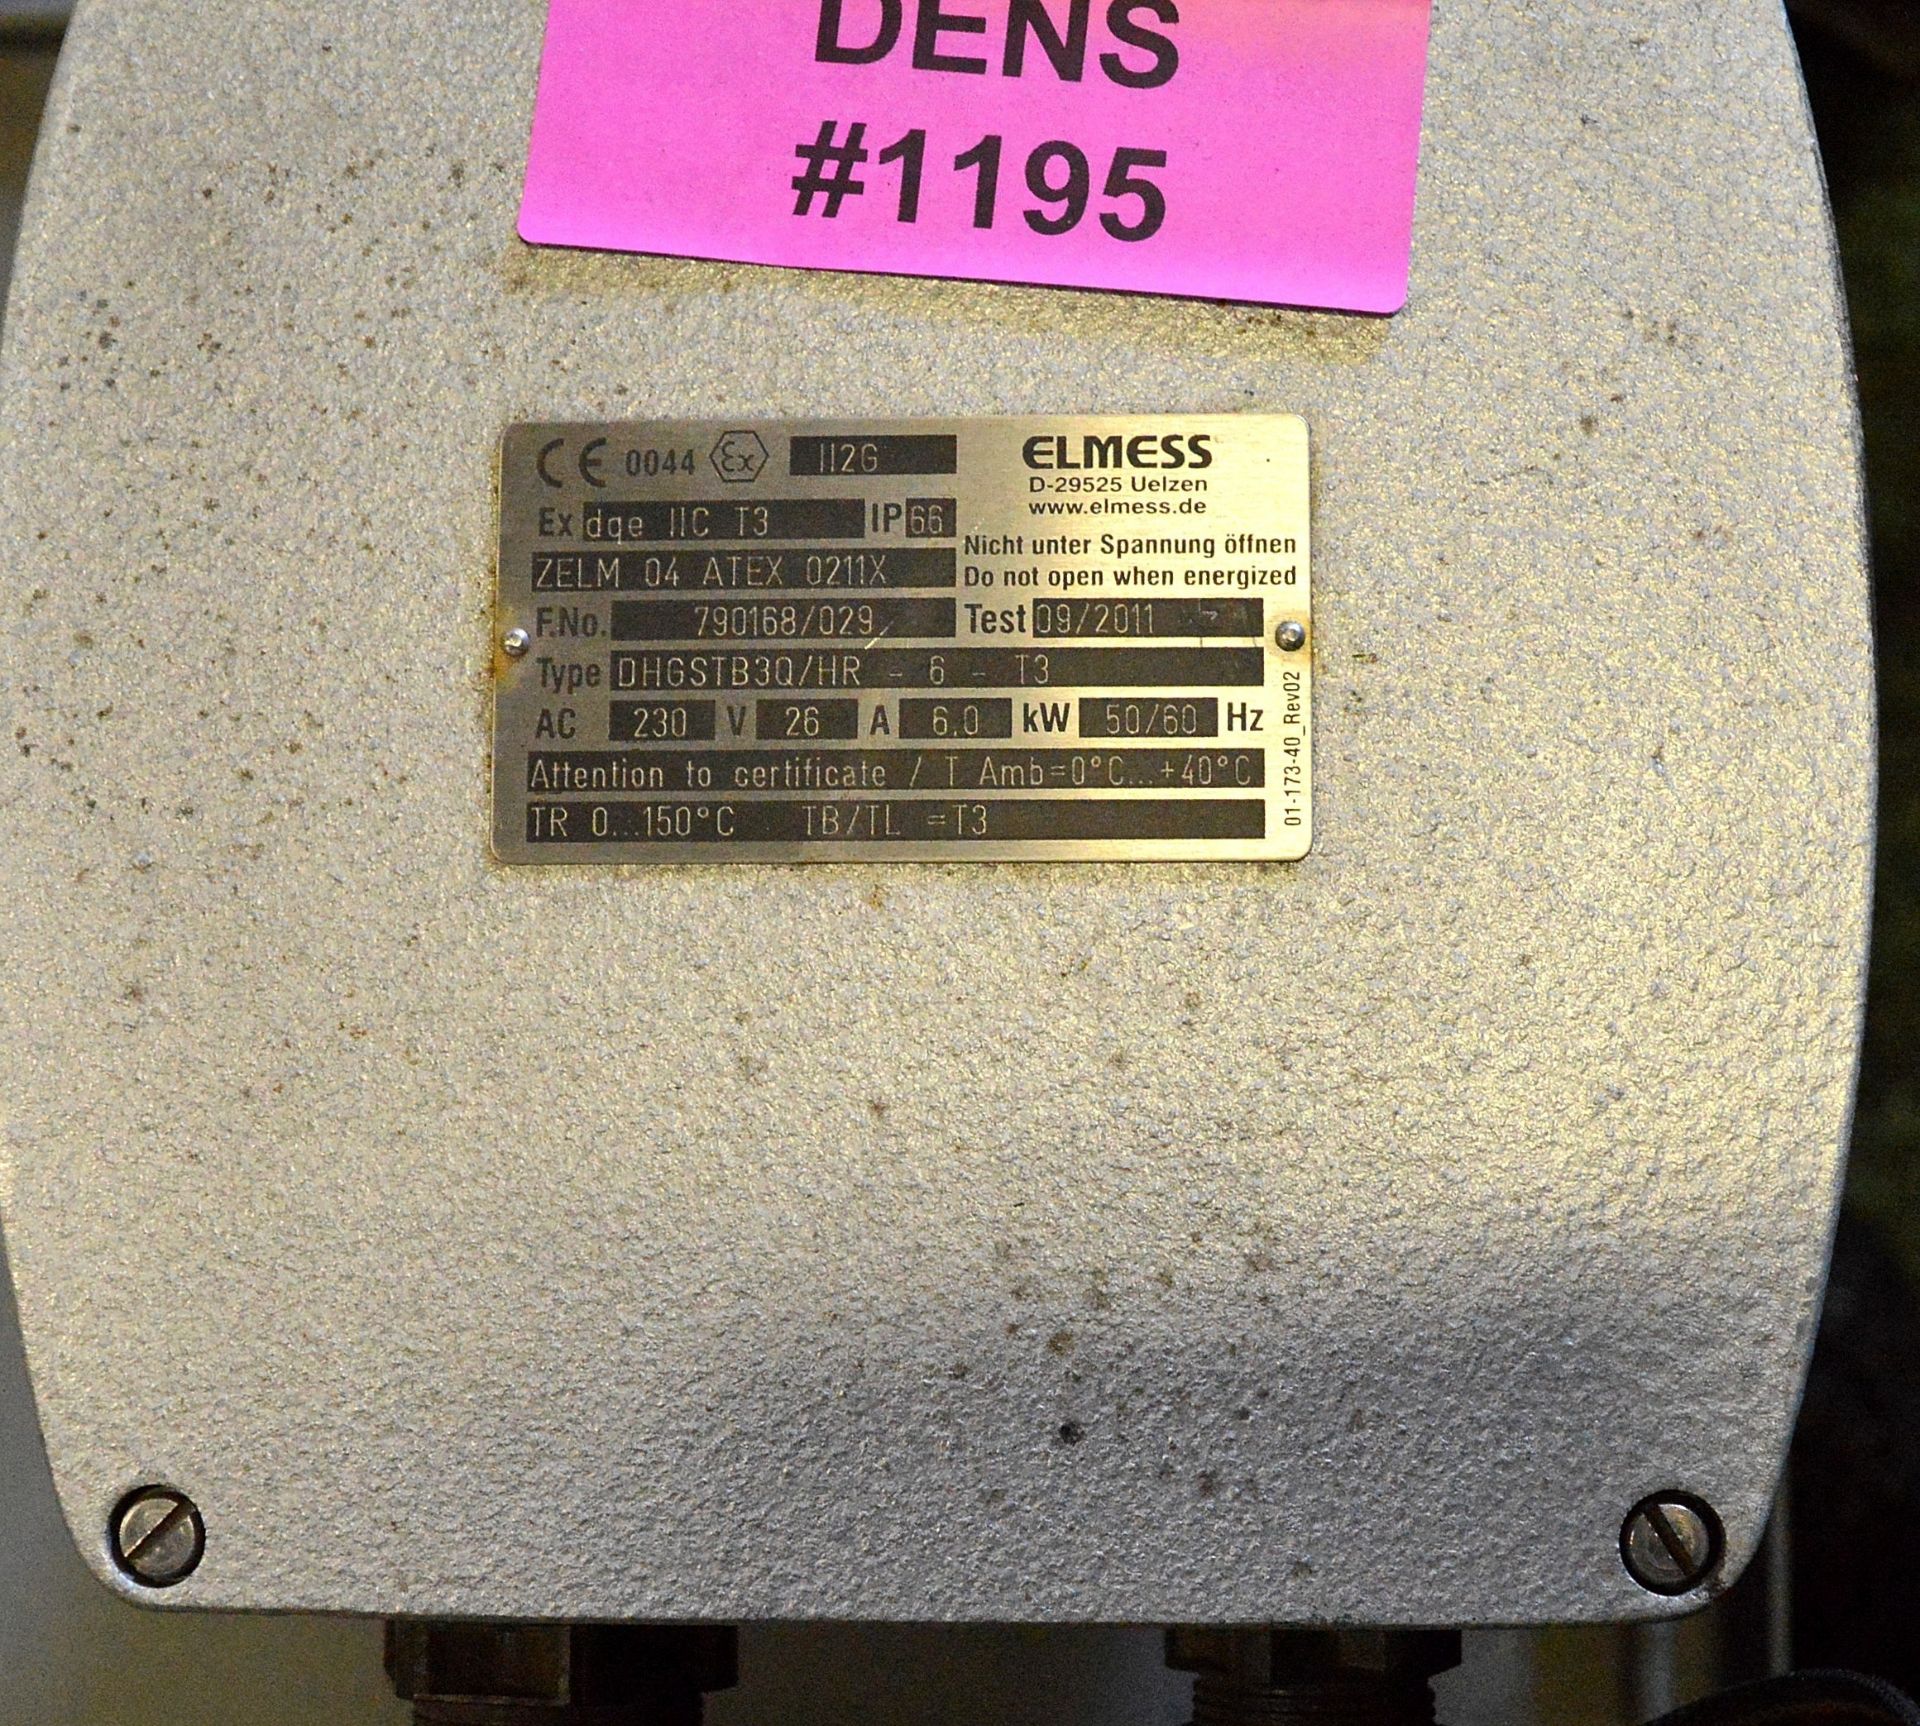 Elmess DGE 11C 13 unit - 230V, 28A, 6.0kW - 50/60hz - Image 3 of 3